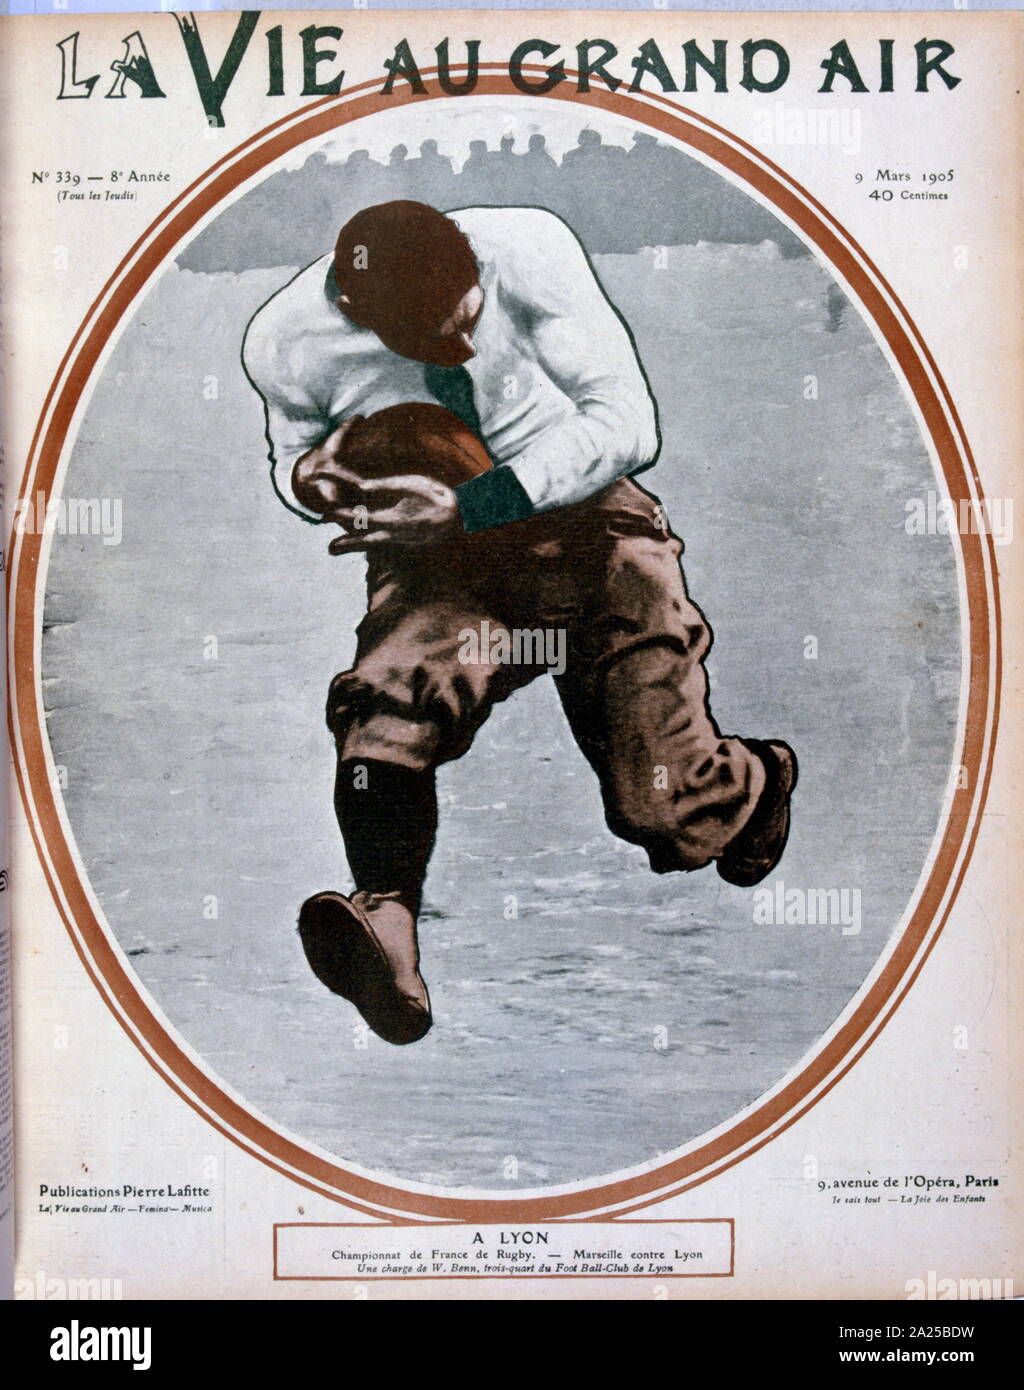 Französischer Rugbyspieler W. Benn 1905 Stockfoto